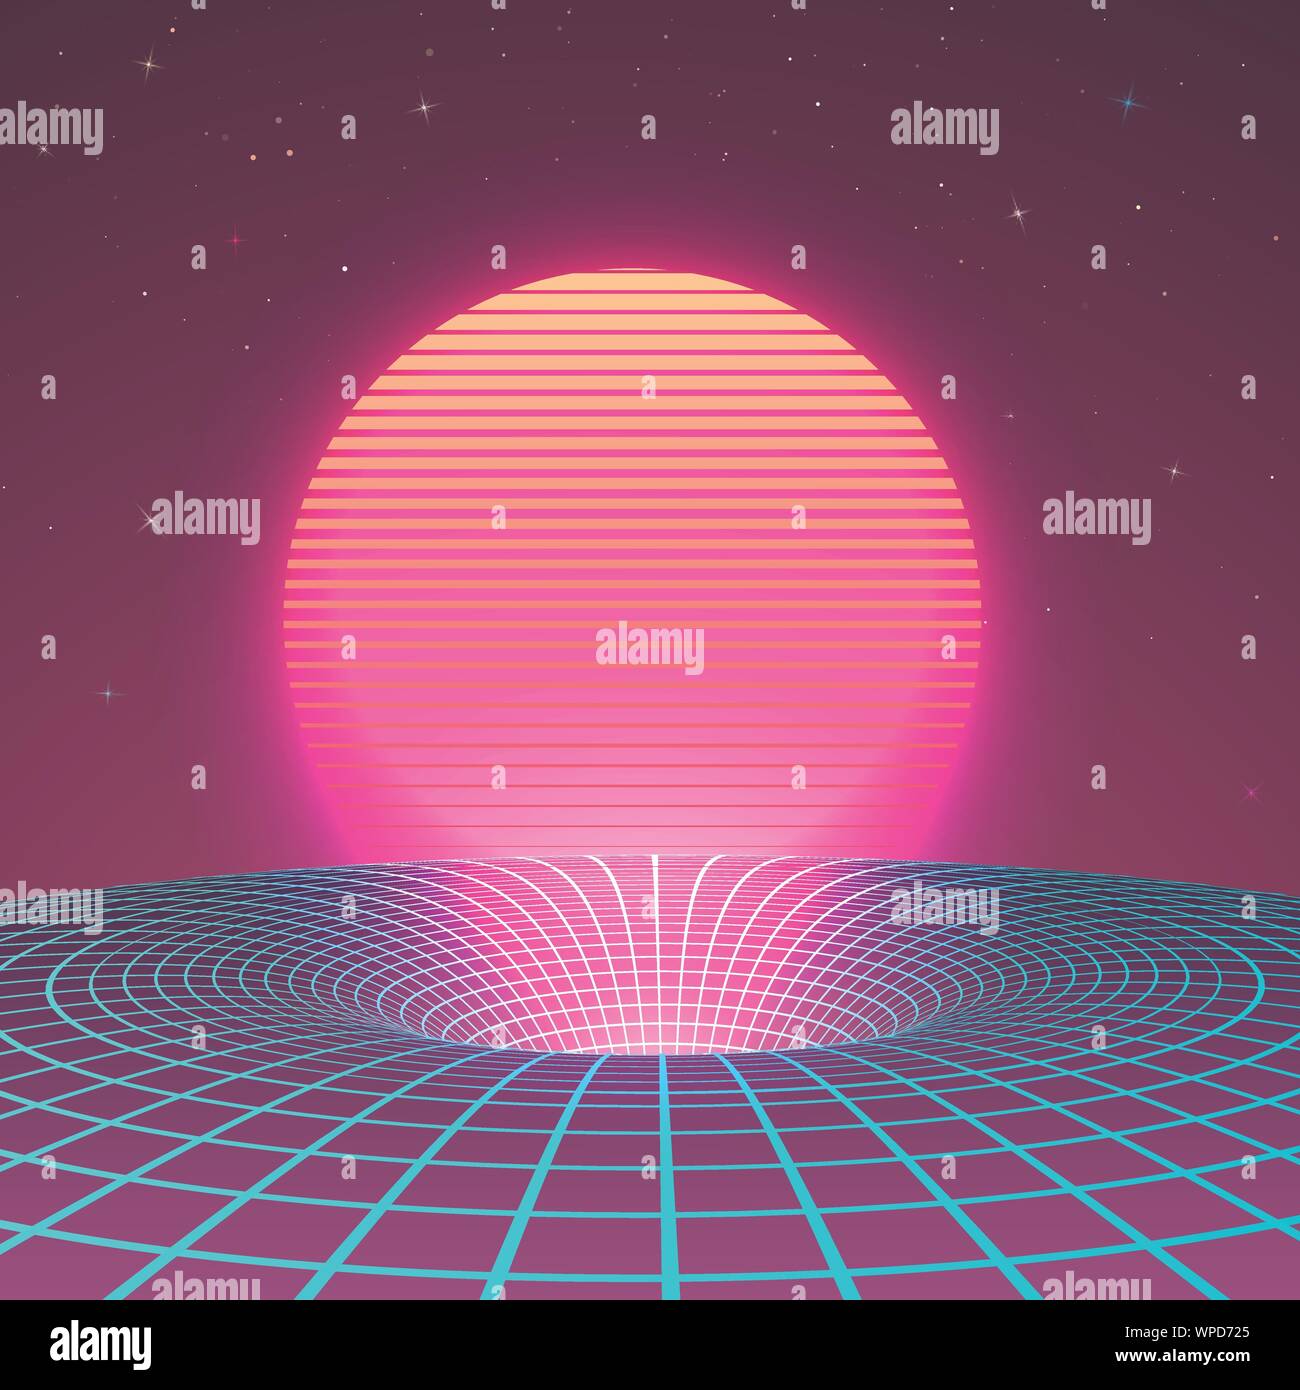 Schwarzes Loch in Neon Farben von 80 s oder 90 s. Hintergrund oder Abdeckung für retrowave elektronische Musik Stil. Sci-fi Poster Vorlage. Vector Illustration Stock Vektor